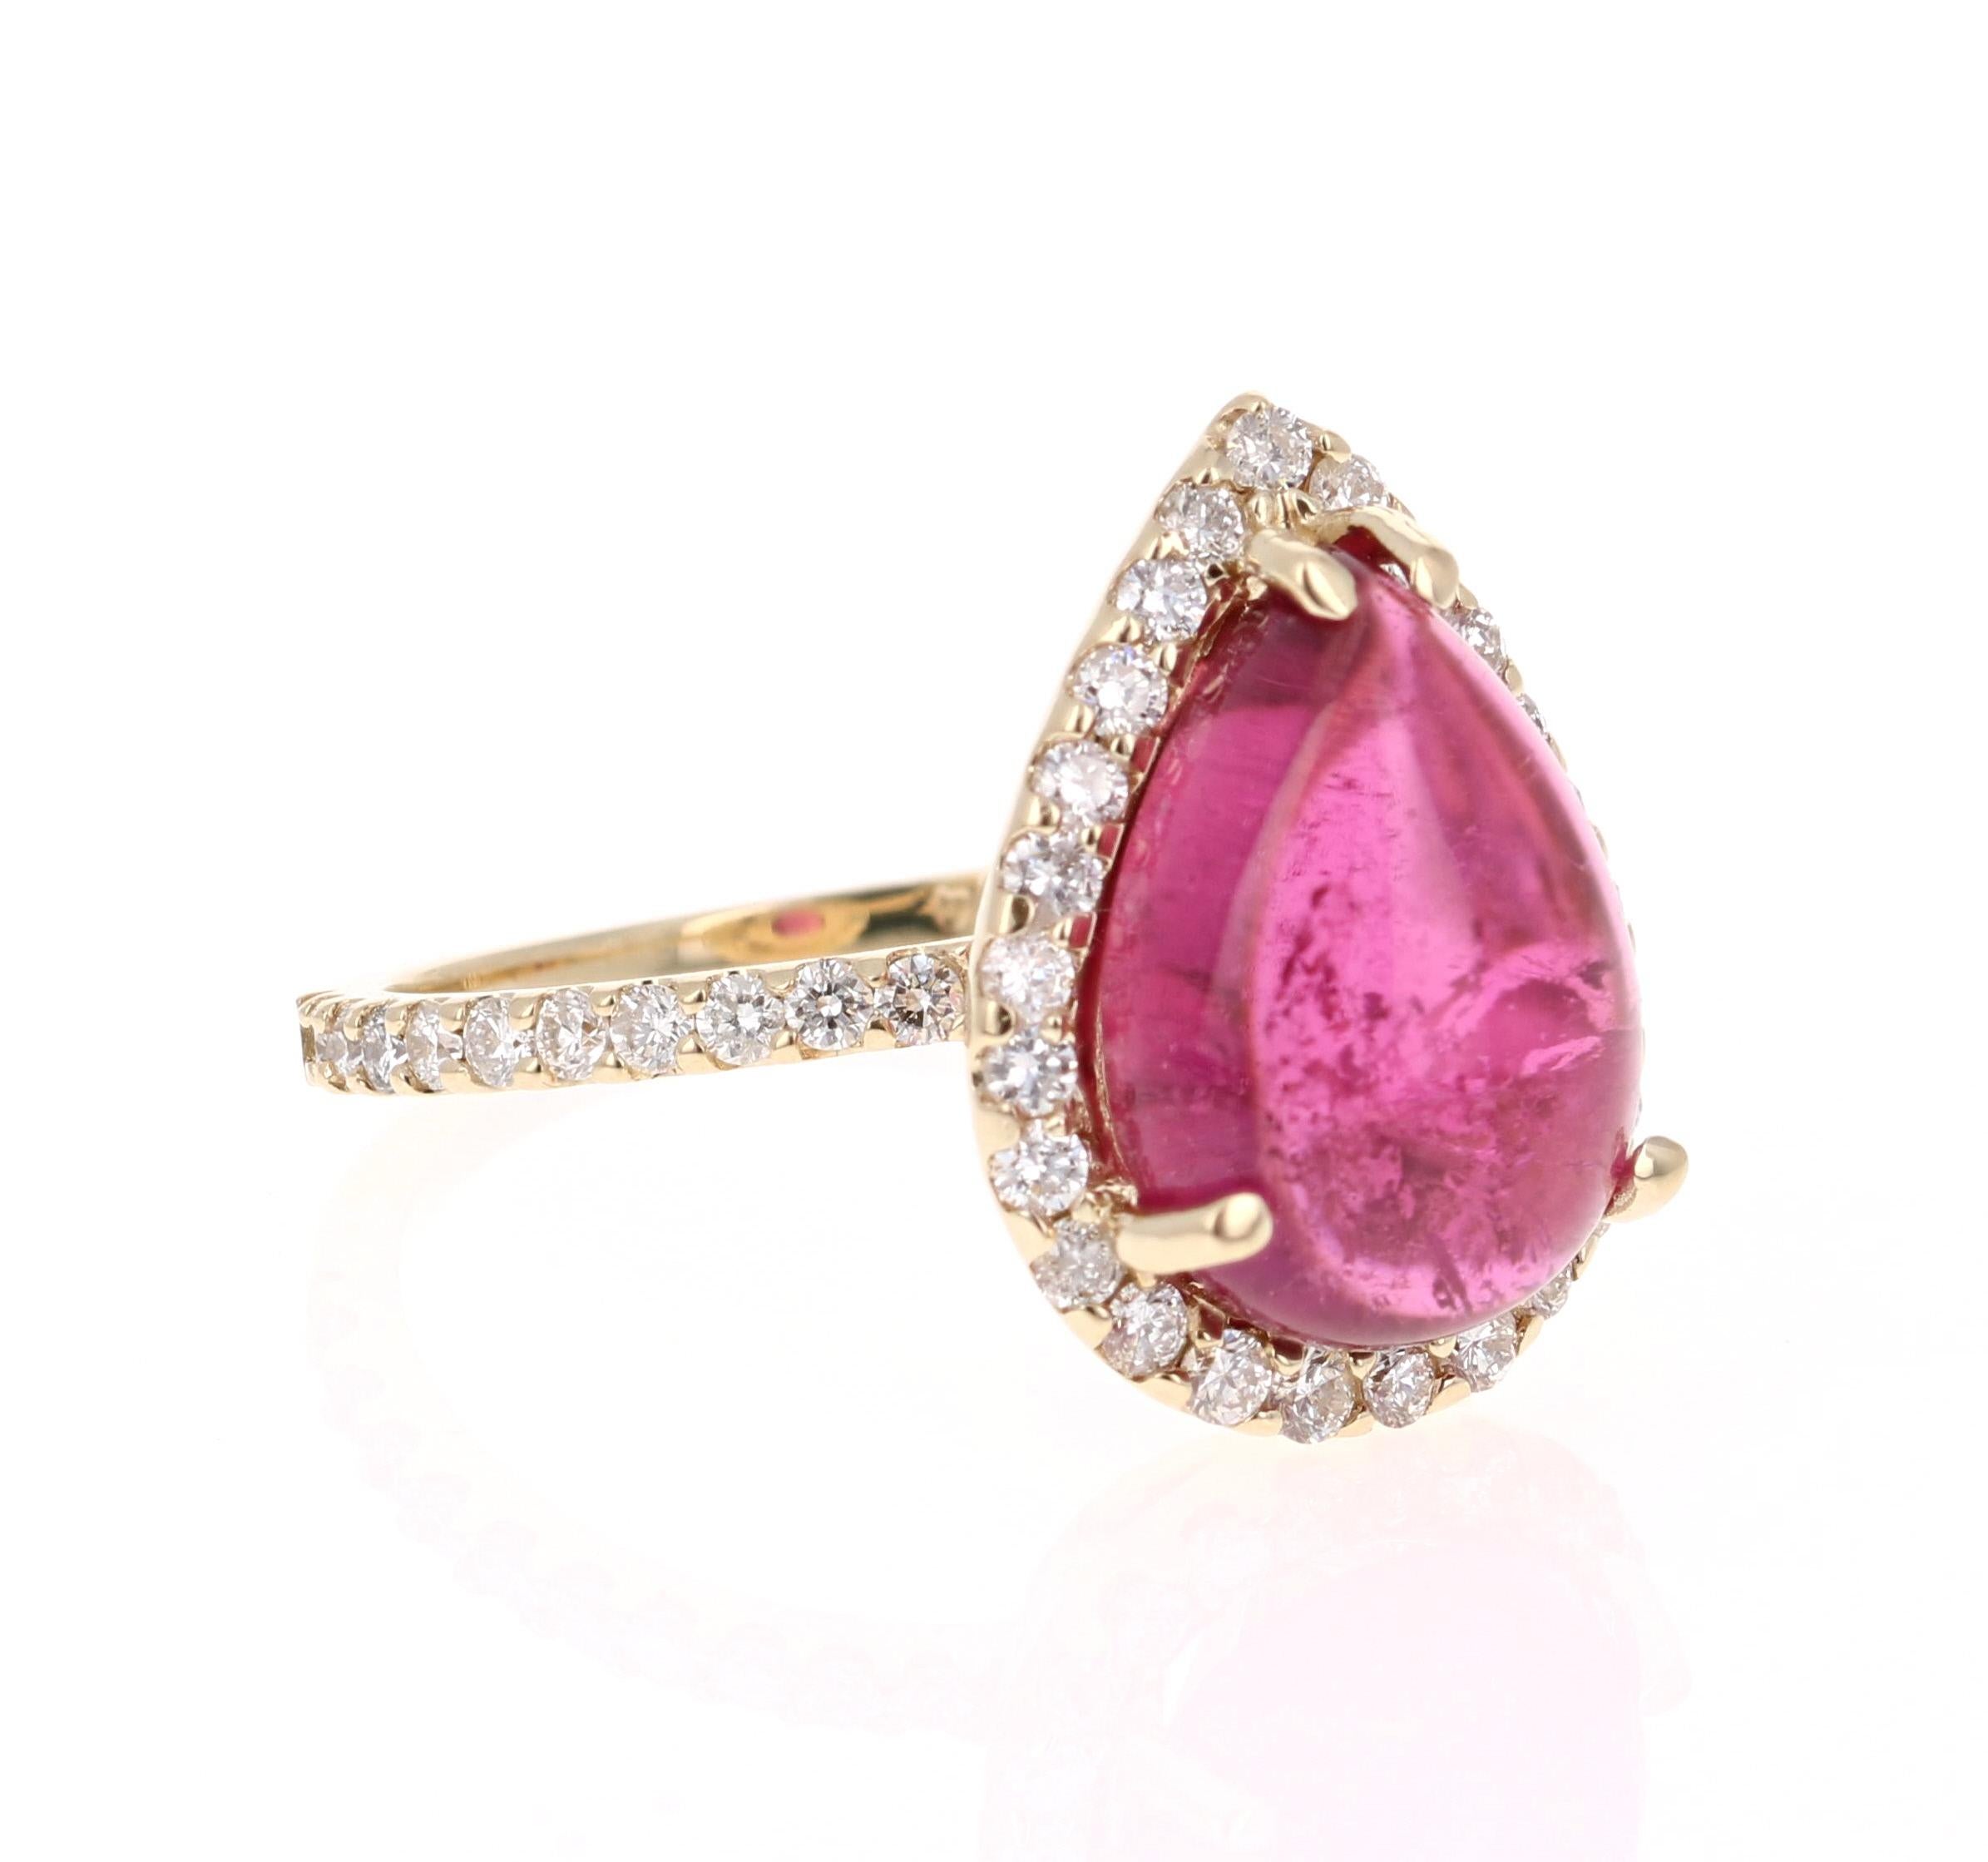 Dieser Ring hat ein einfach wunderschönes Pear Cut / Cabochon Pink Turmalin, die 5,72 Karat wiegt. Um den Turmalin herum schwebt ein schlichter Heiligenschein aus 46 Diamanten im Rundschliff mit einem Gewicht von 0,79 Karat. Das Gesamtkaratgewicht